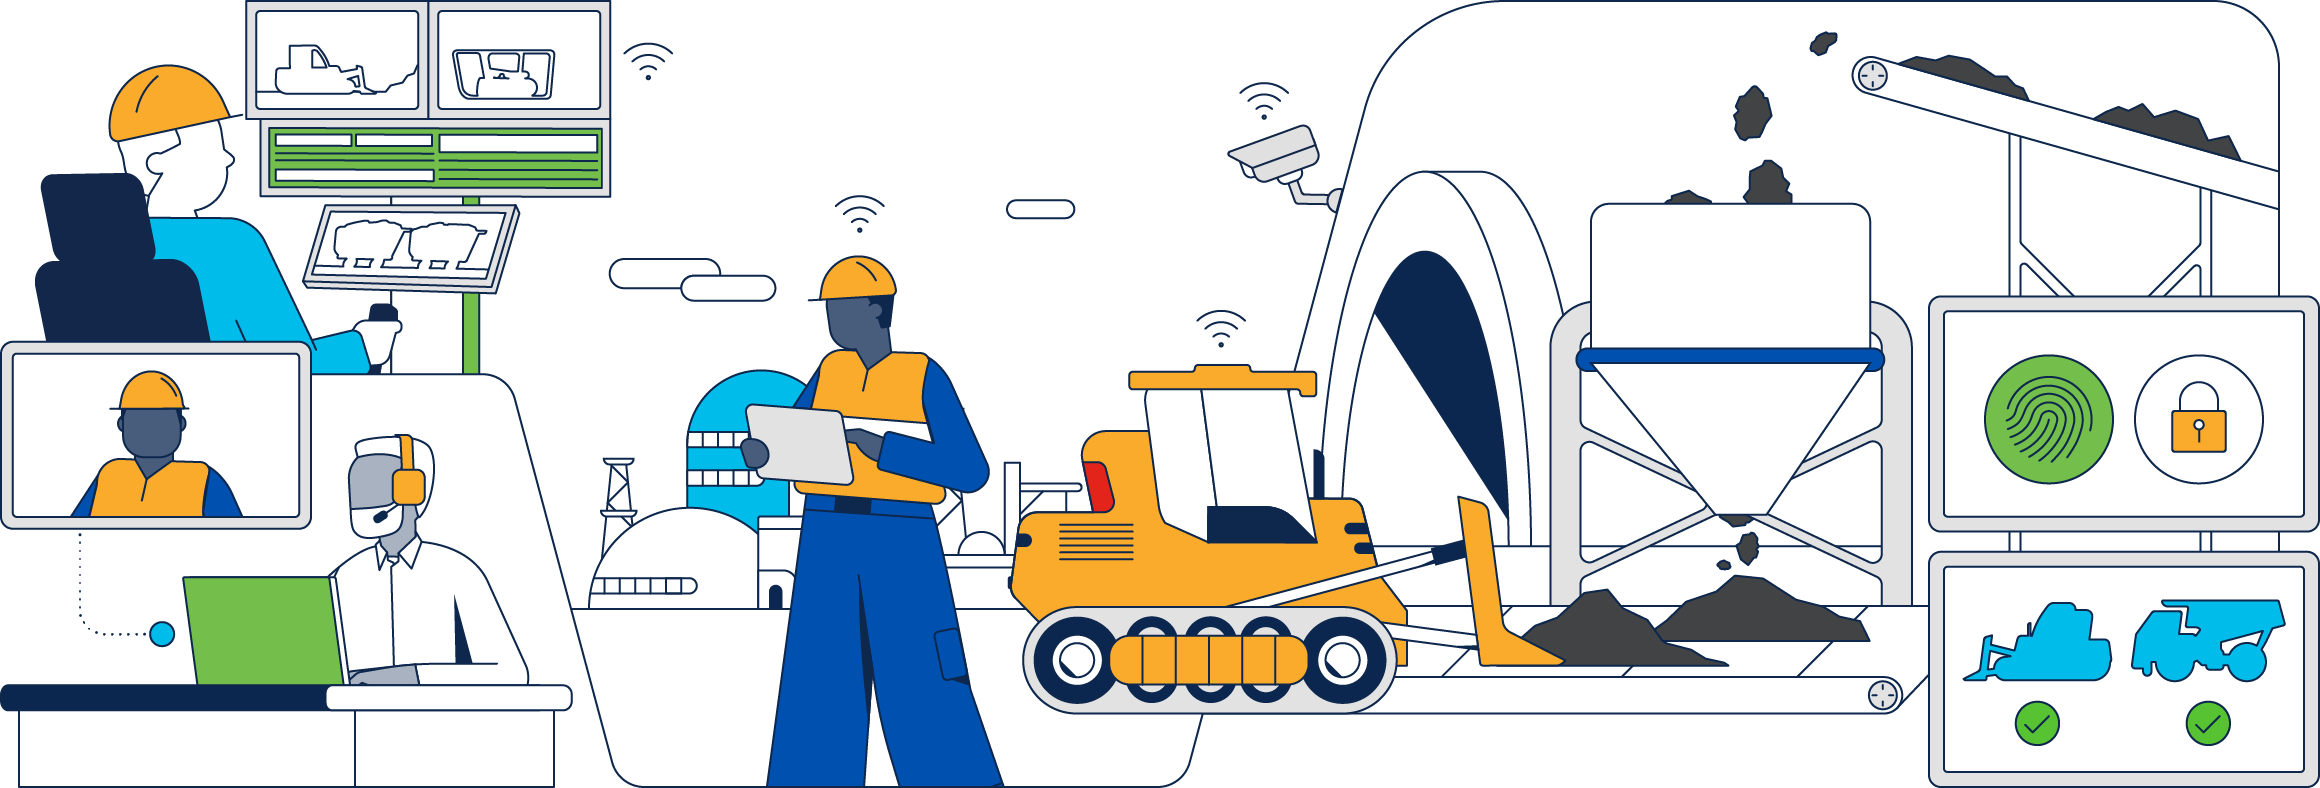 Industry illustration